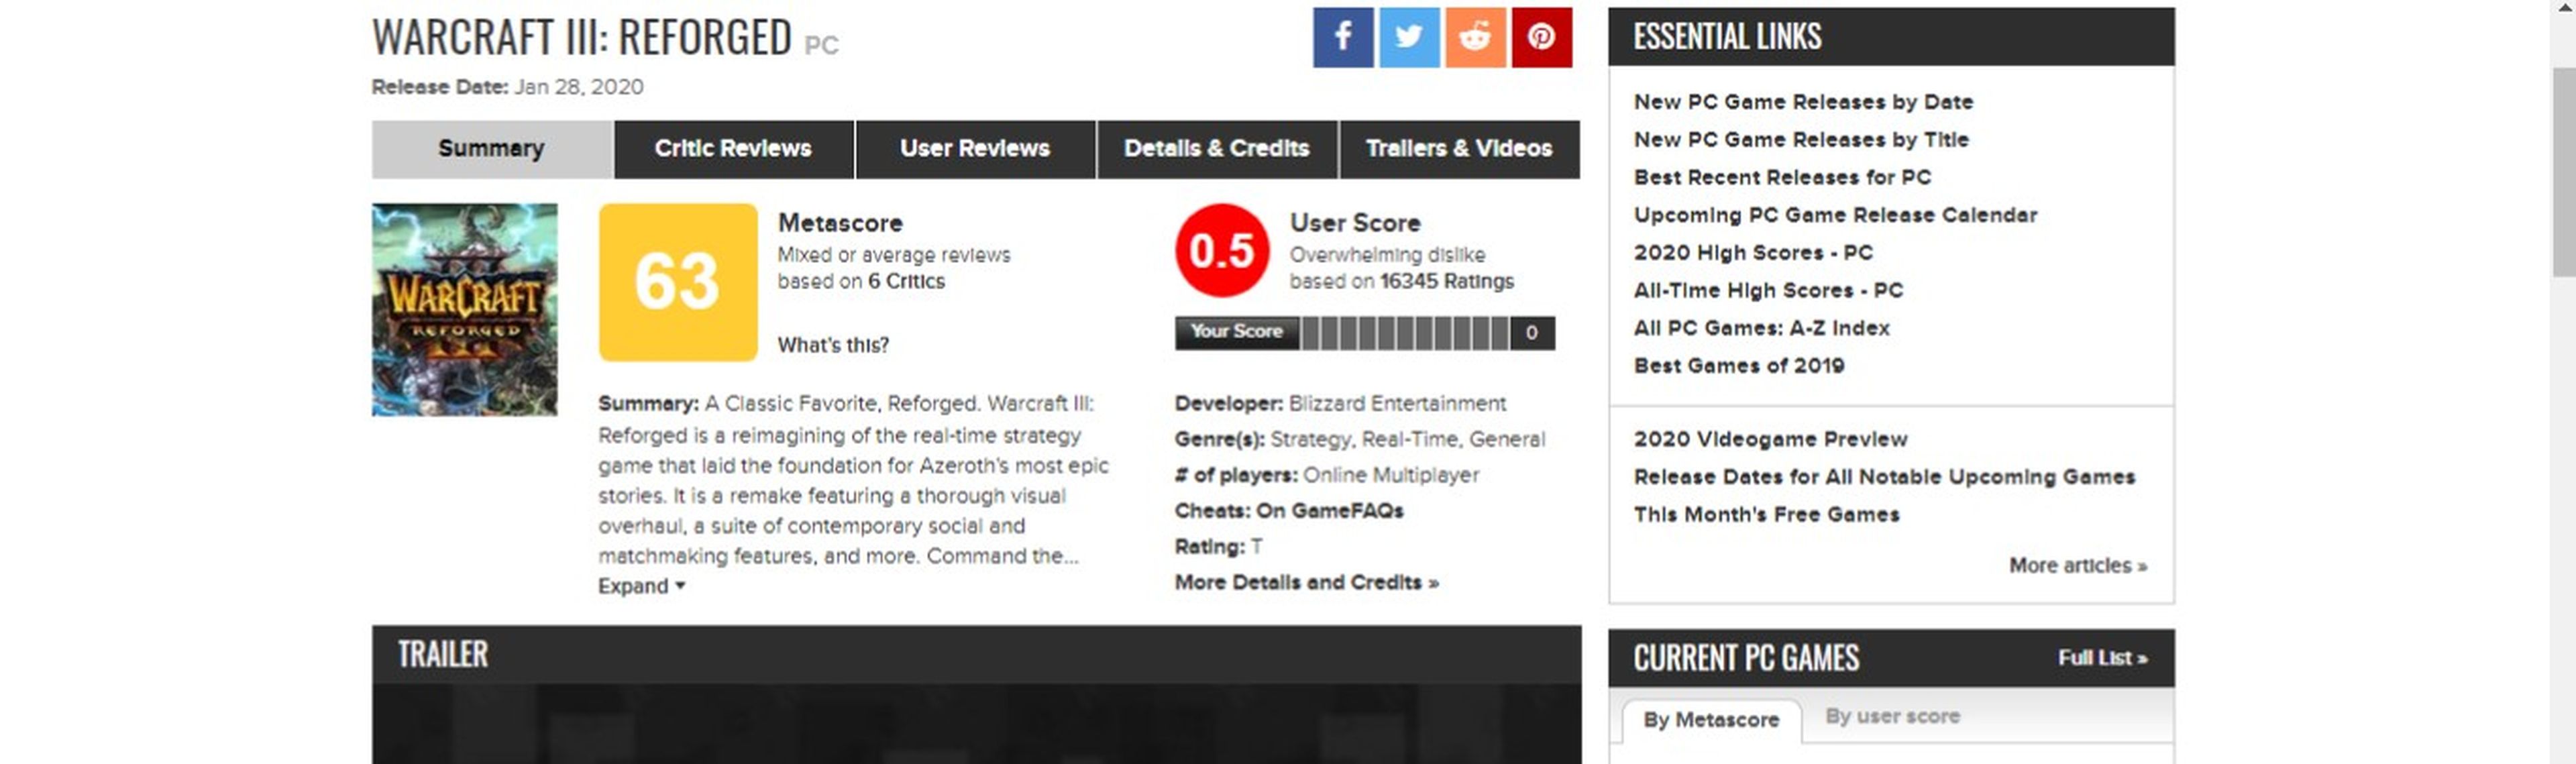 Warcraft III Reforged Metacritic